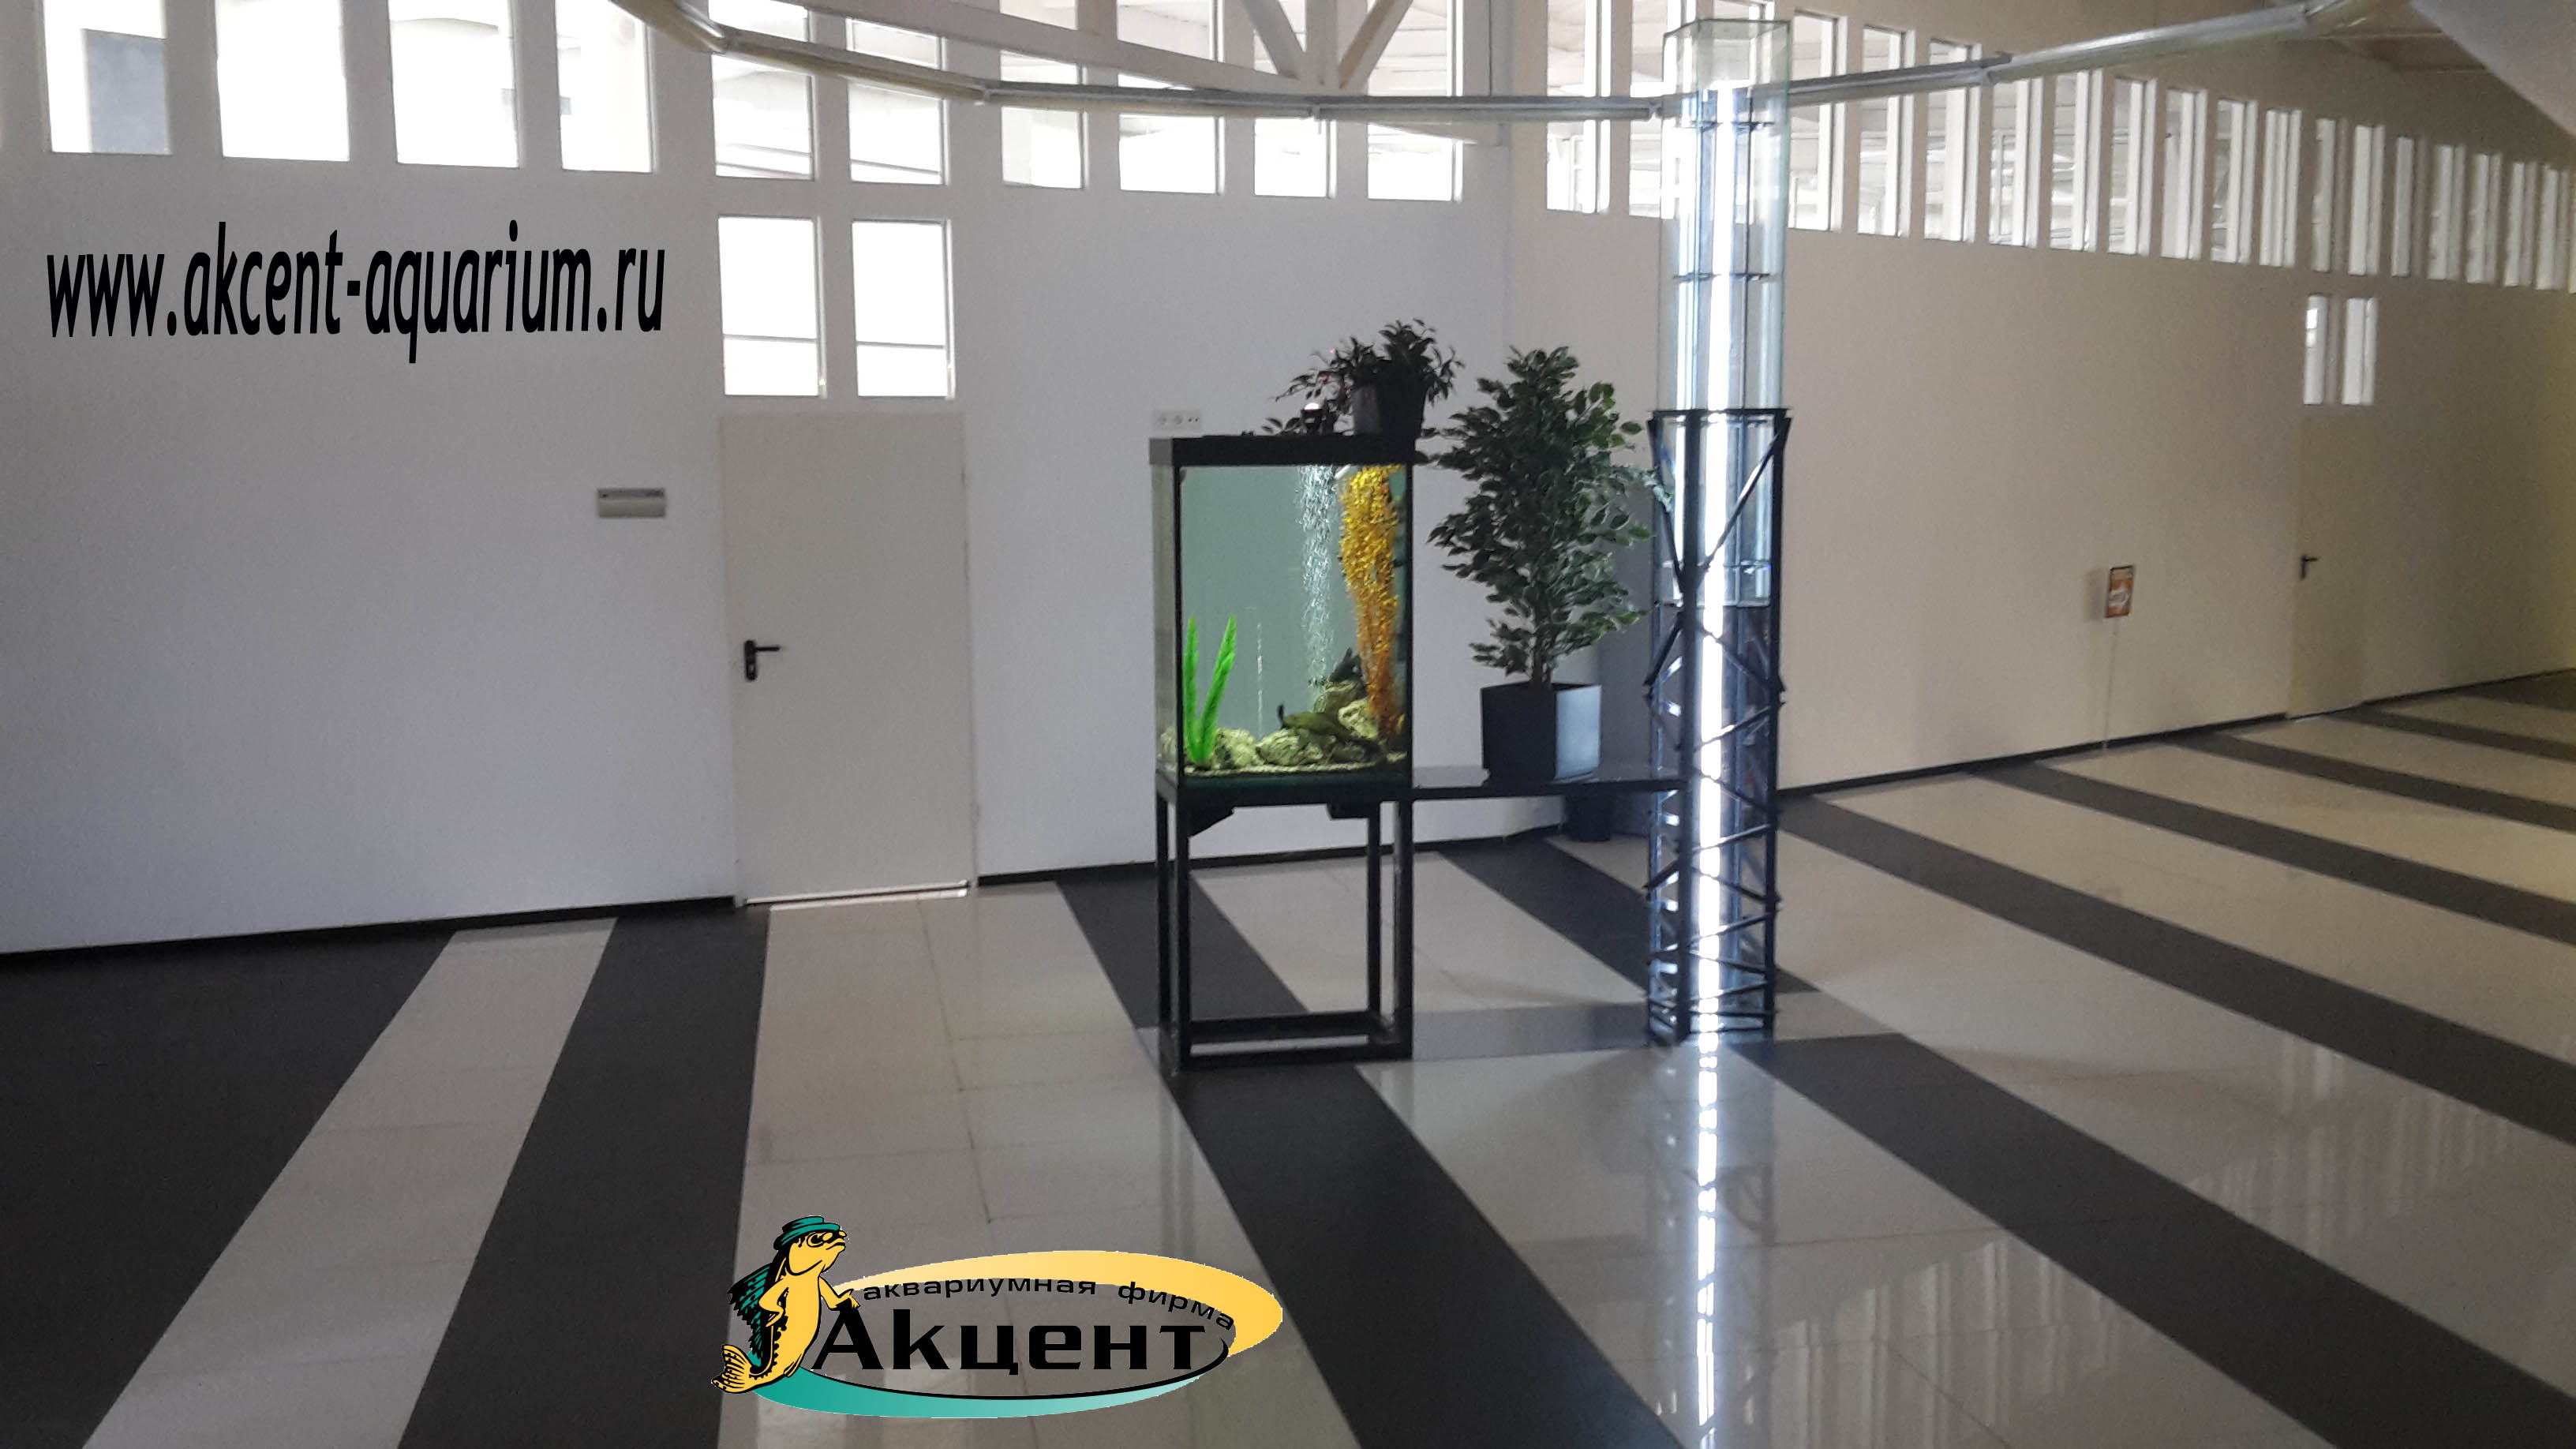 Акцент-аквариум, аквариум 300 литров просмотровый со всех сторон